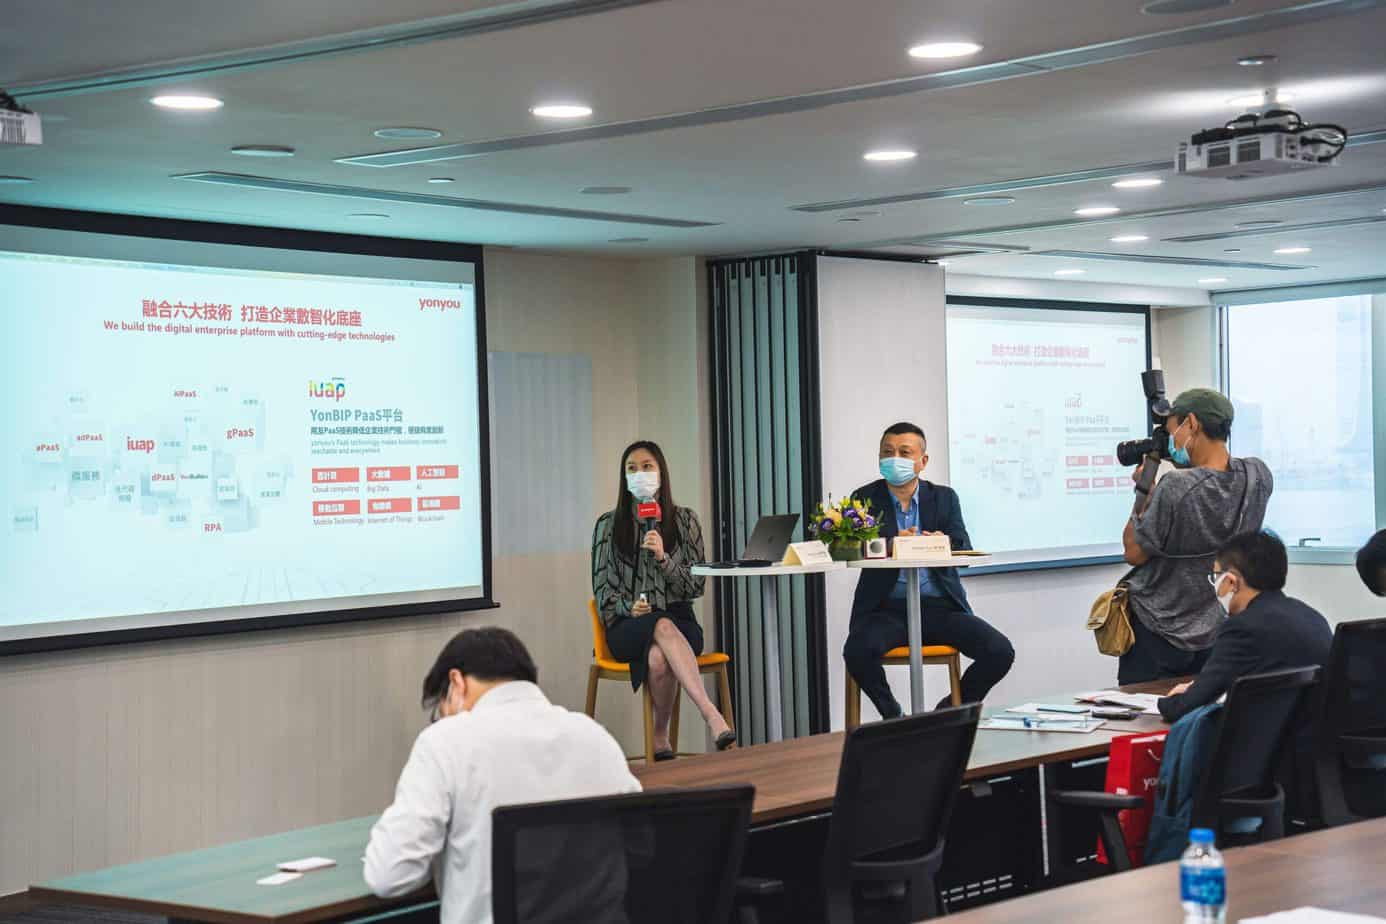 Yonyou Hong Kong: 18 Years in Hong Kong, Empowering Enterprise Digitalization